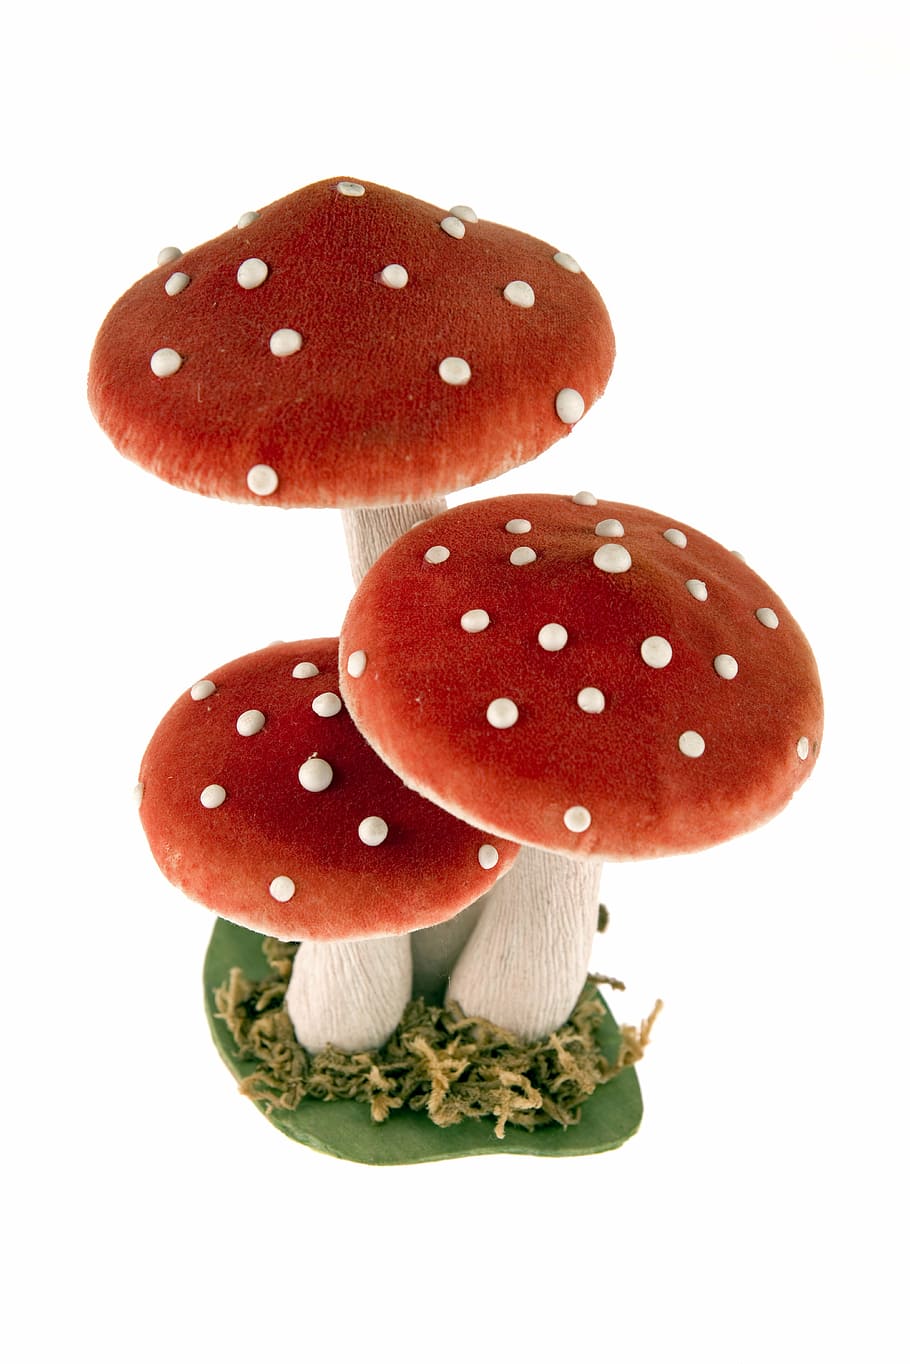 cogumelos venenosos, cogumelos, alguns, artificial, vermelho, branco, ornamento, decoração, ainda vida, fungo